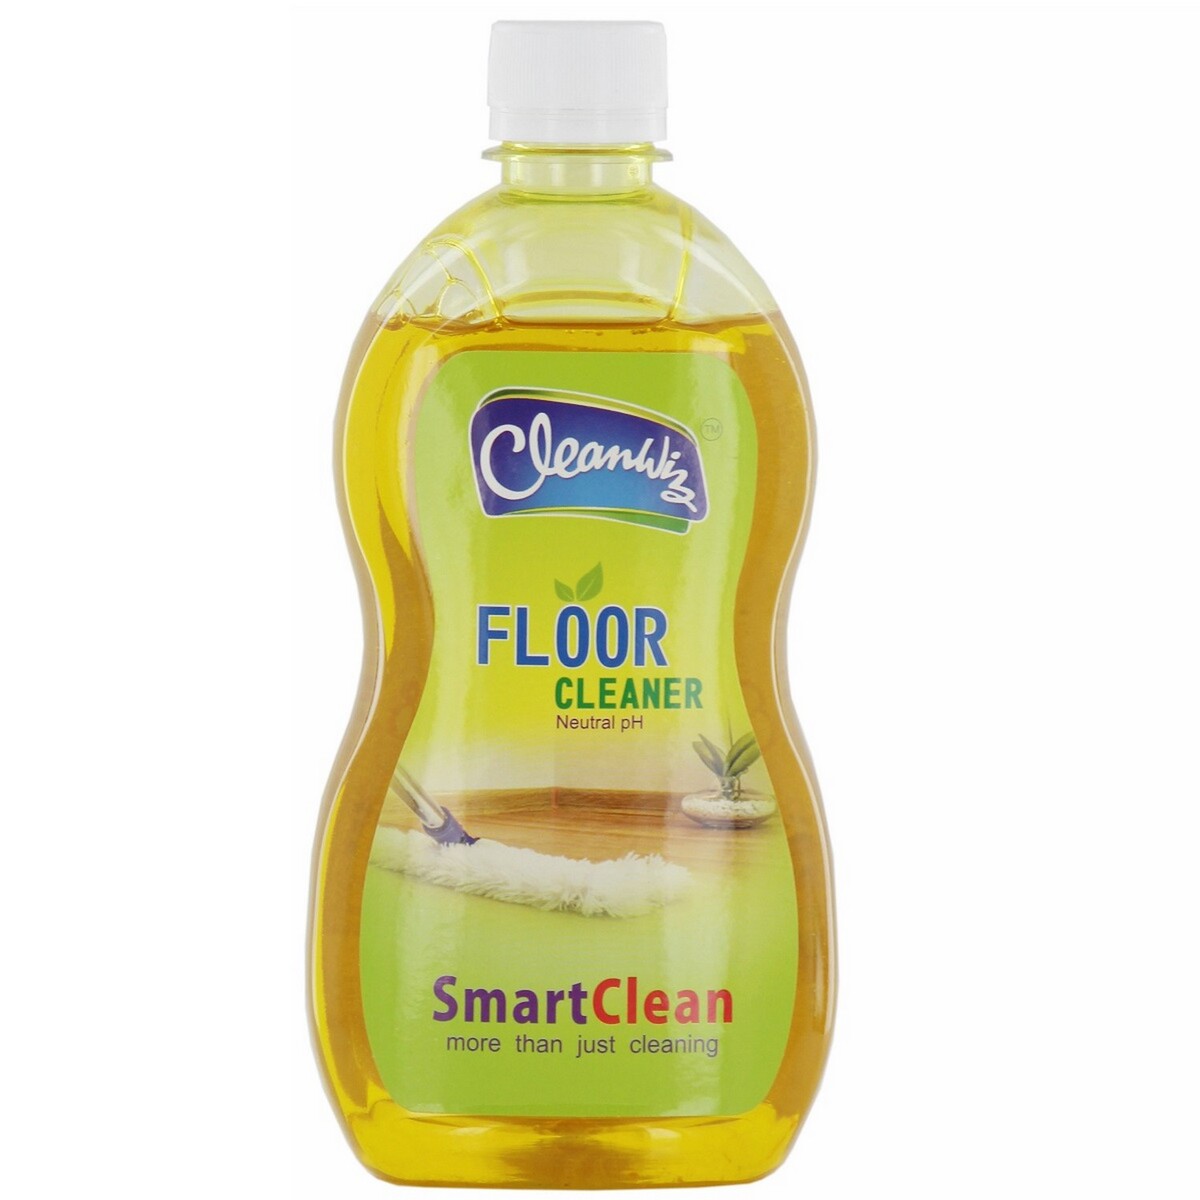 Cleanwiz Floor Cleaner 500ml